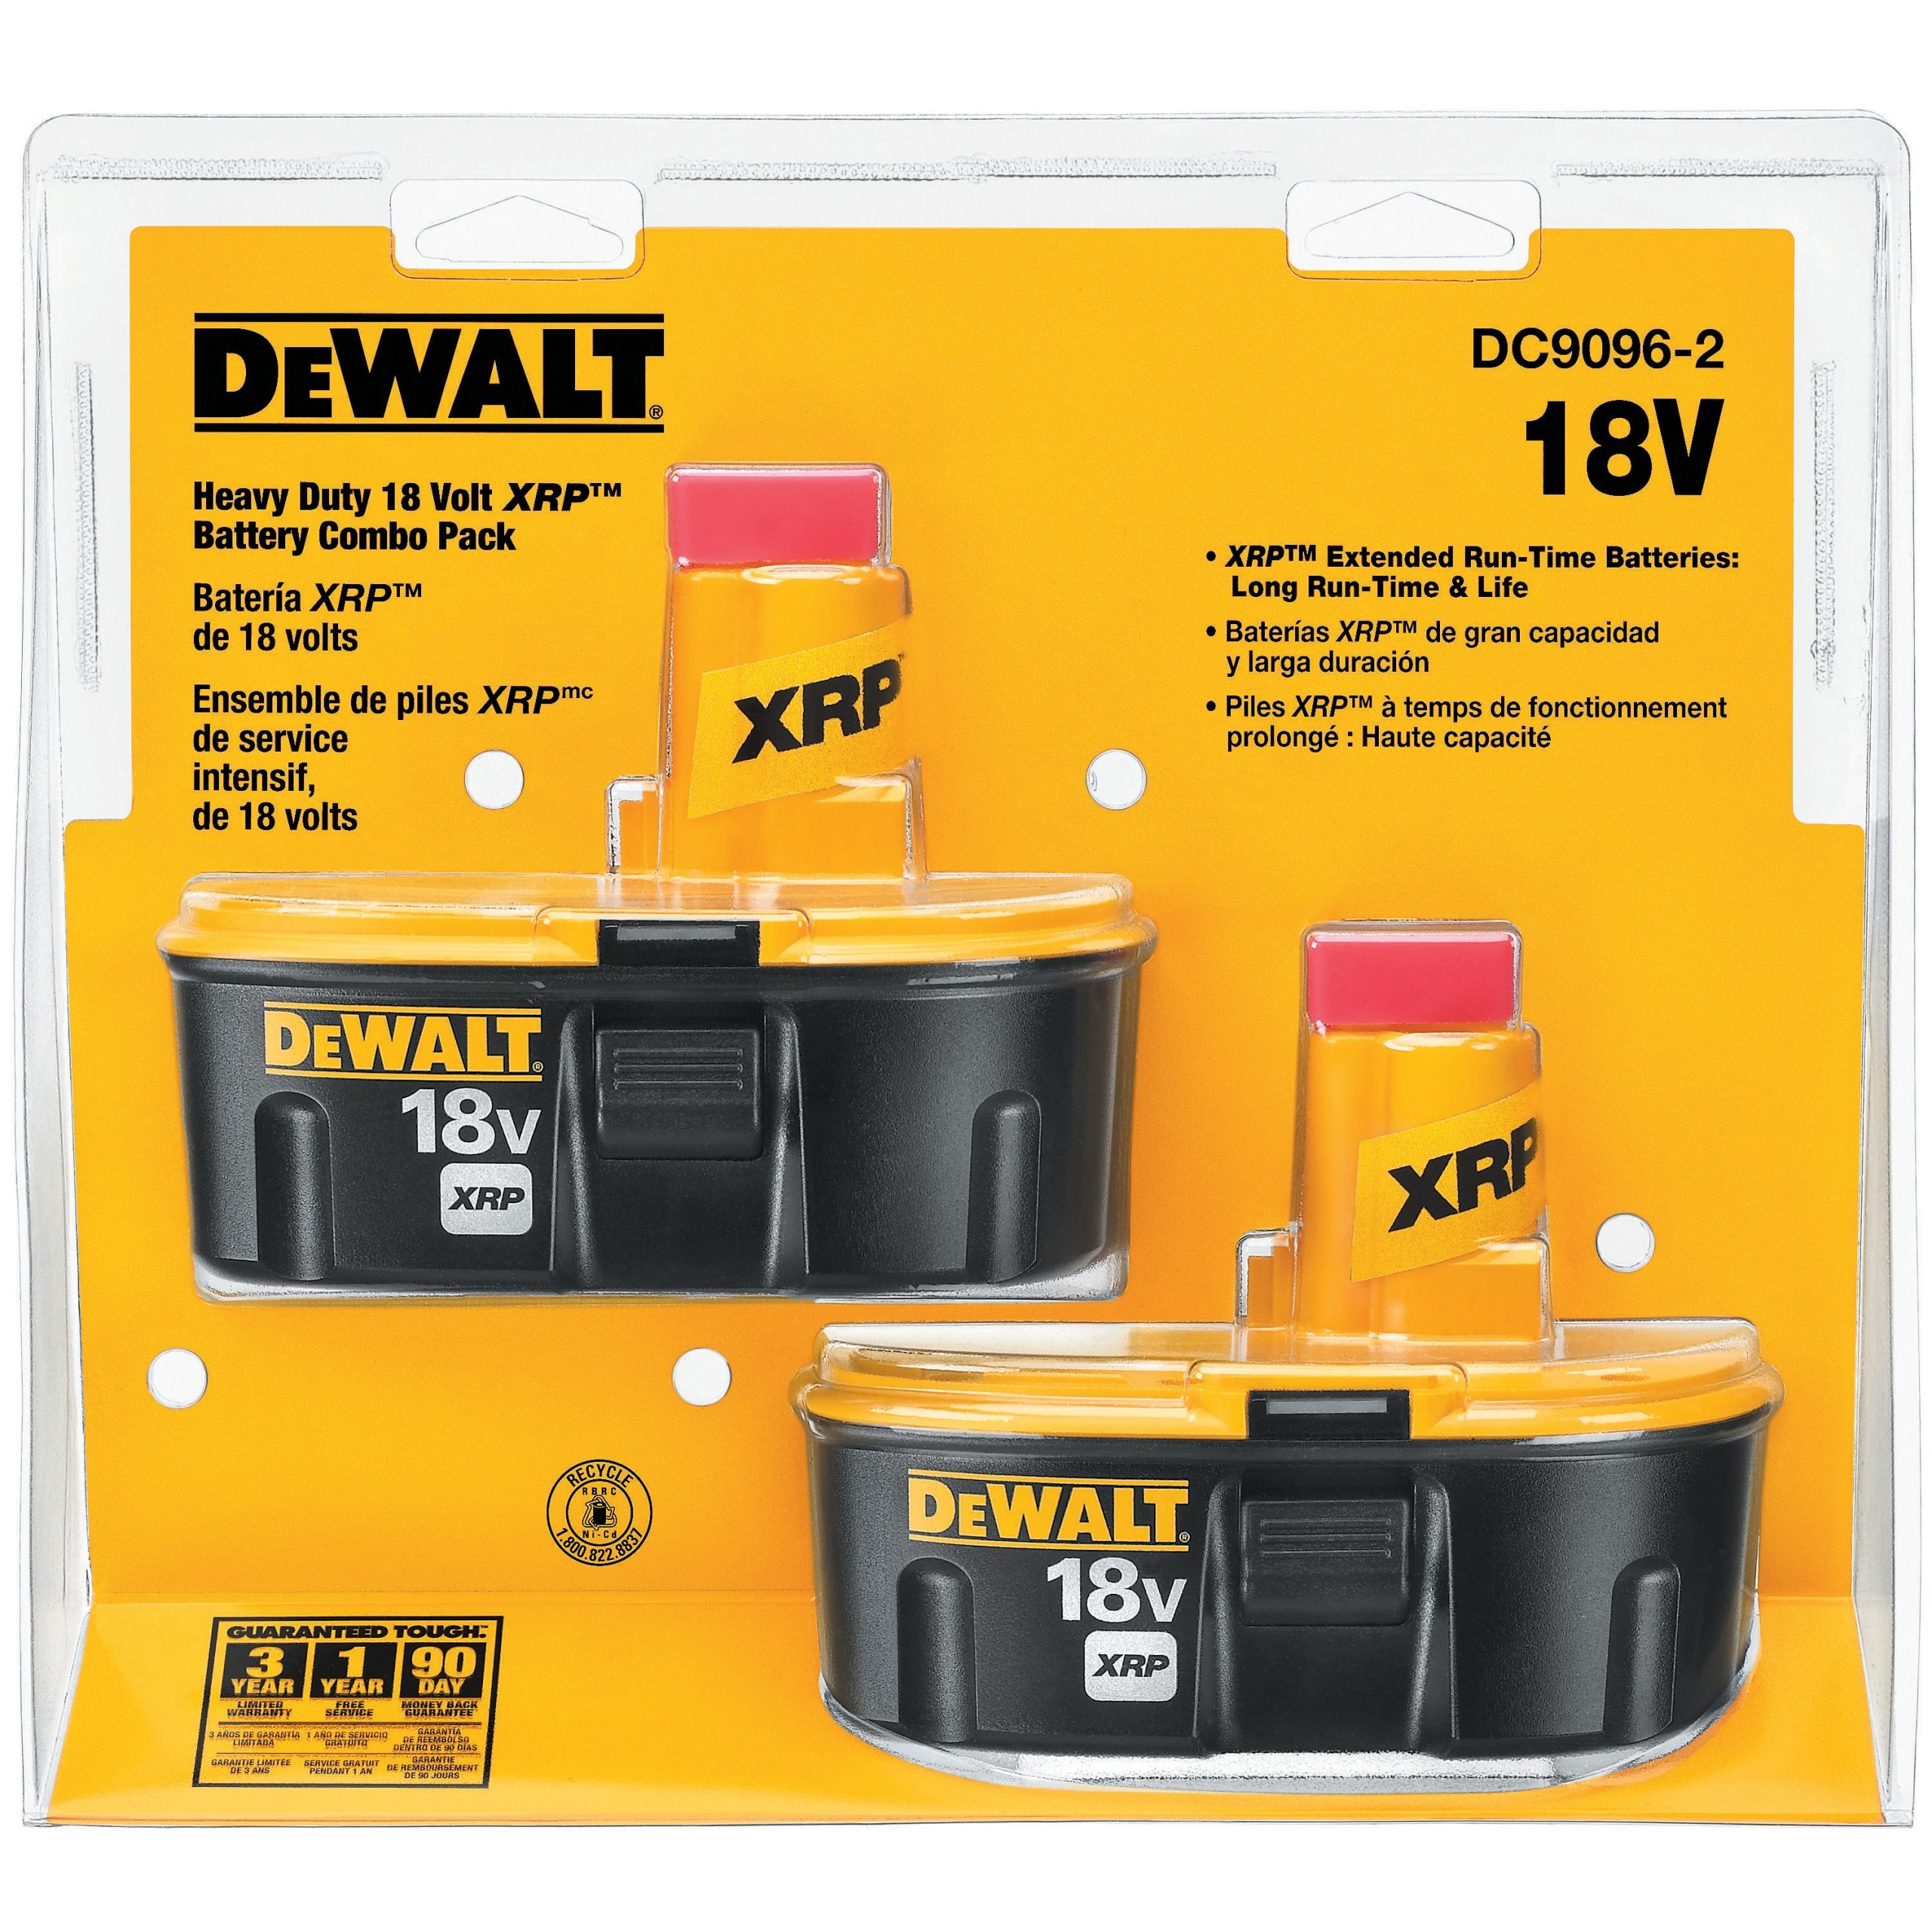 Does Dewalt Still Make 18V Batteries